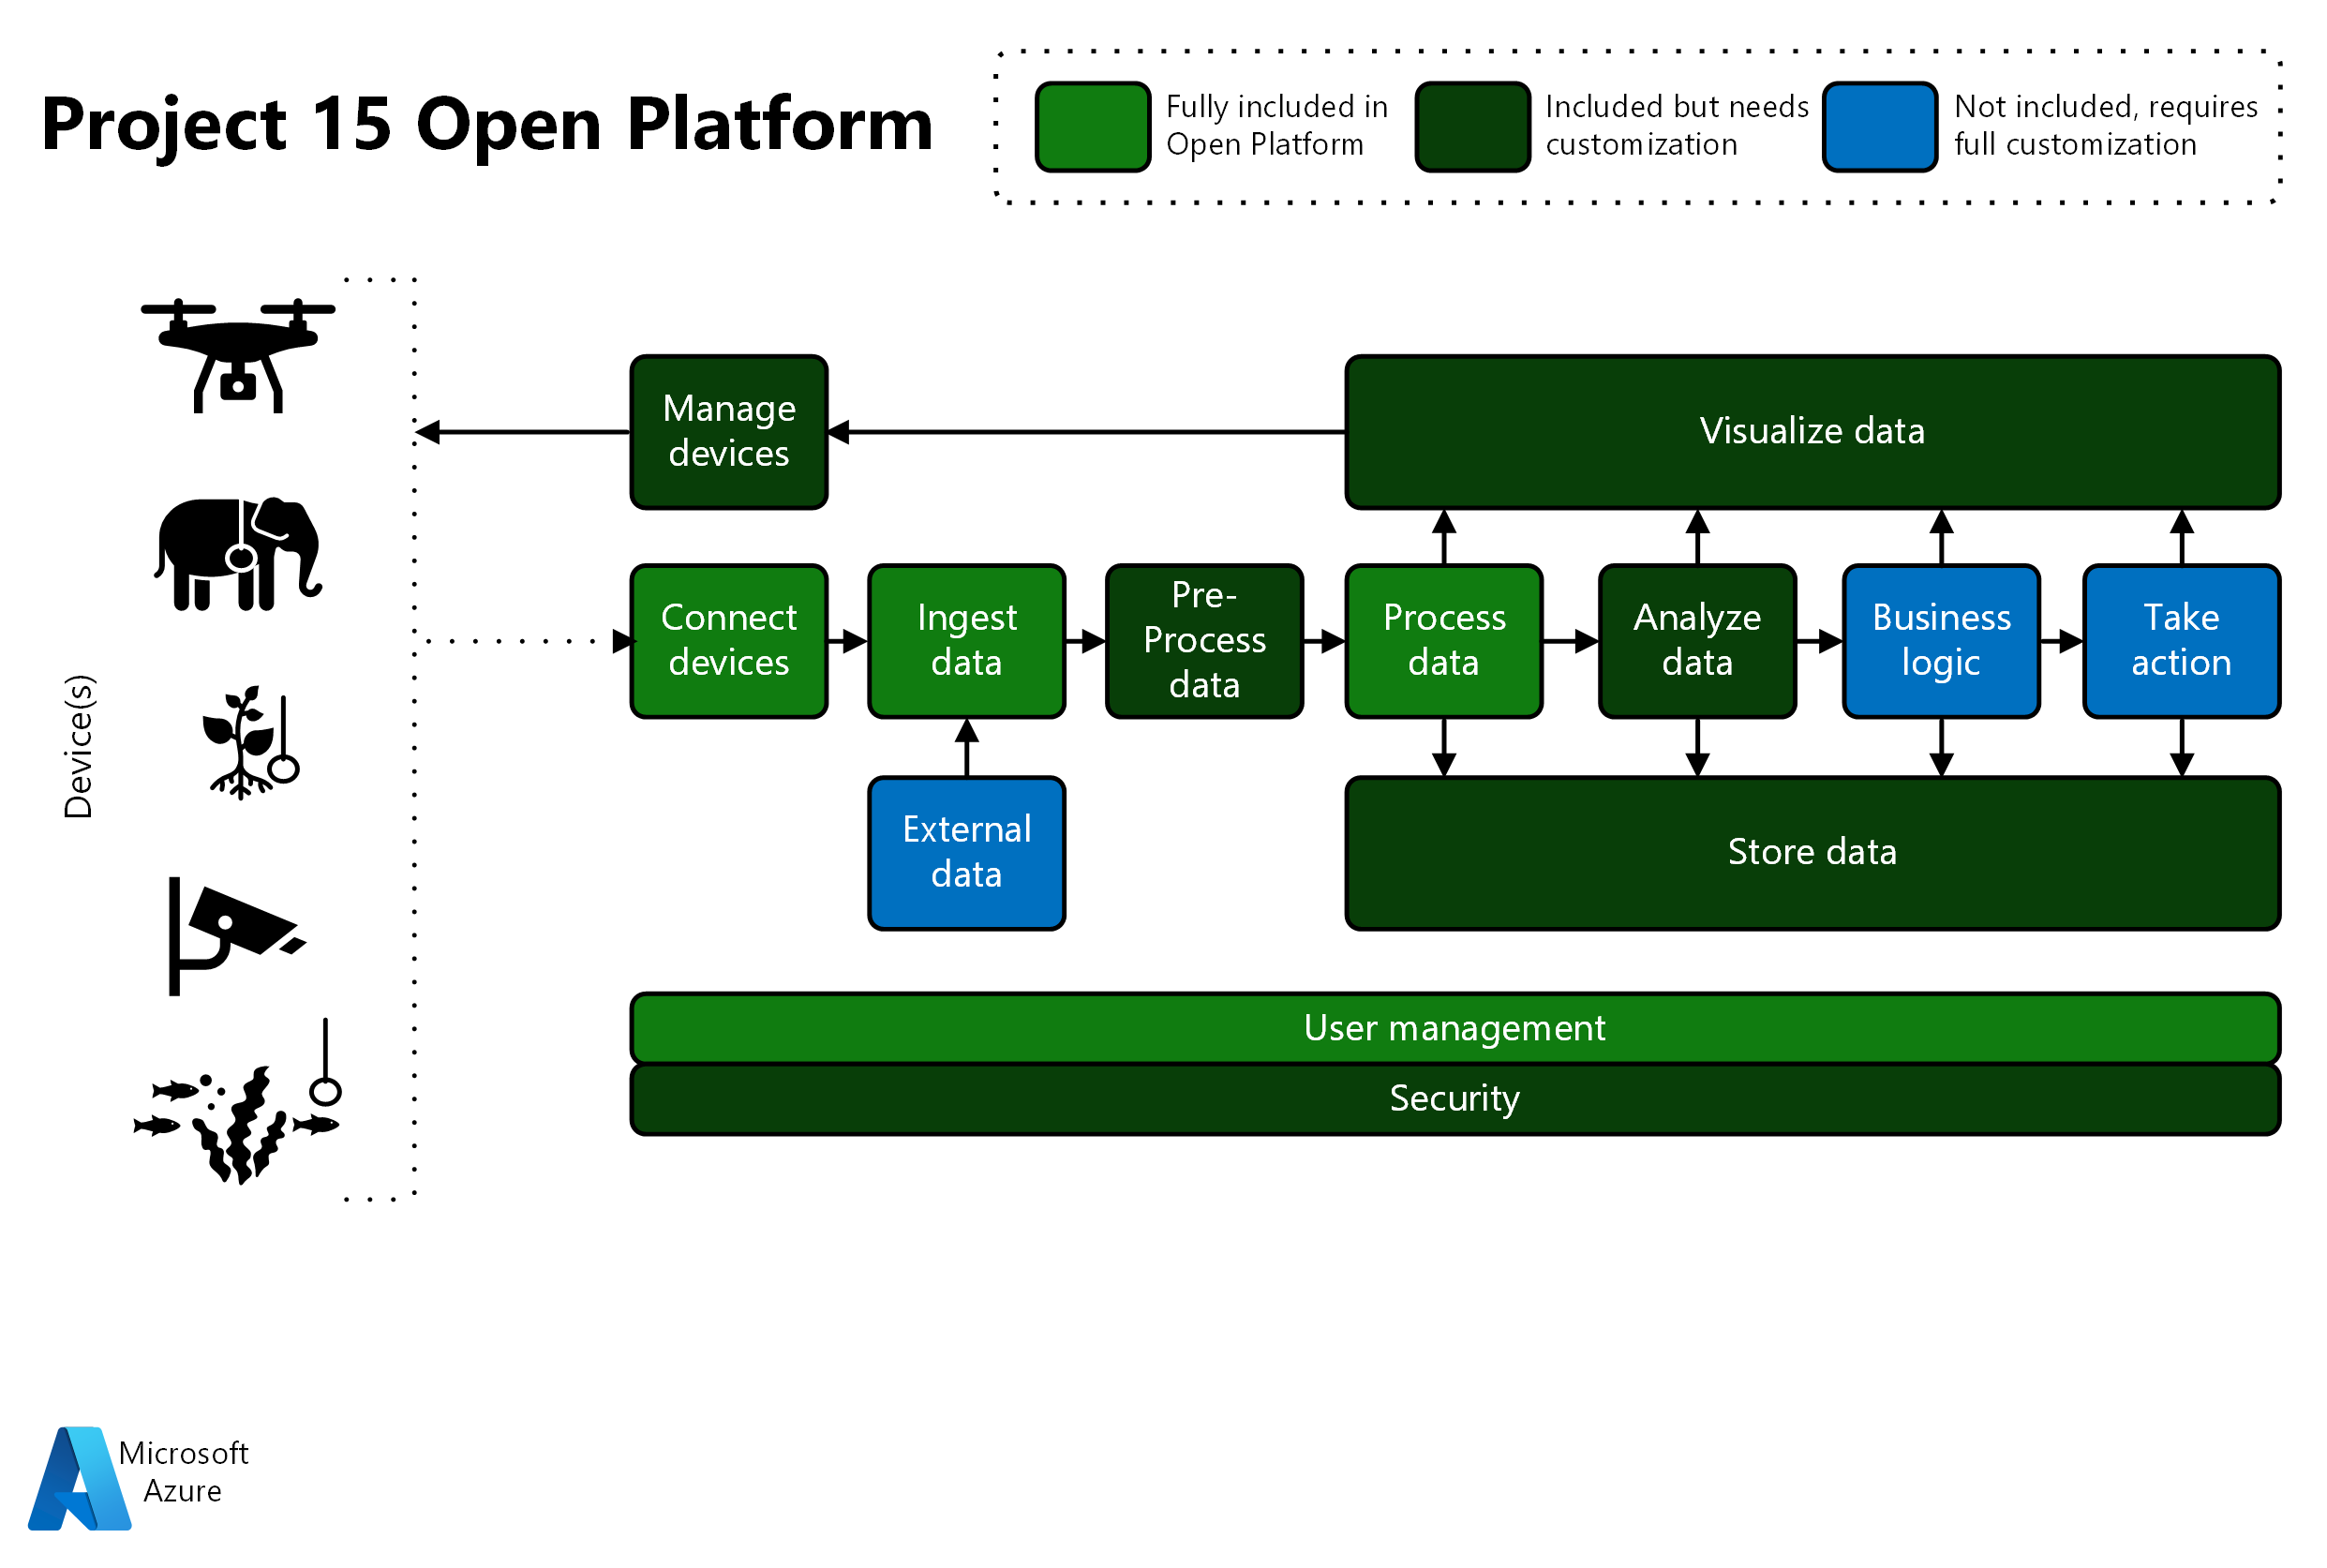 Diagram met een overzicht van project 15 Open Platform-functionaliteit. Kleuren geven het aanpassingsniveau aan dat elk gebied nodig heeft.